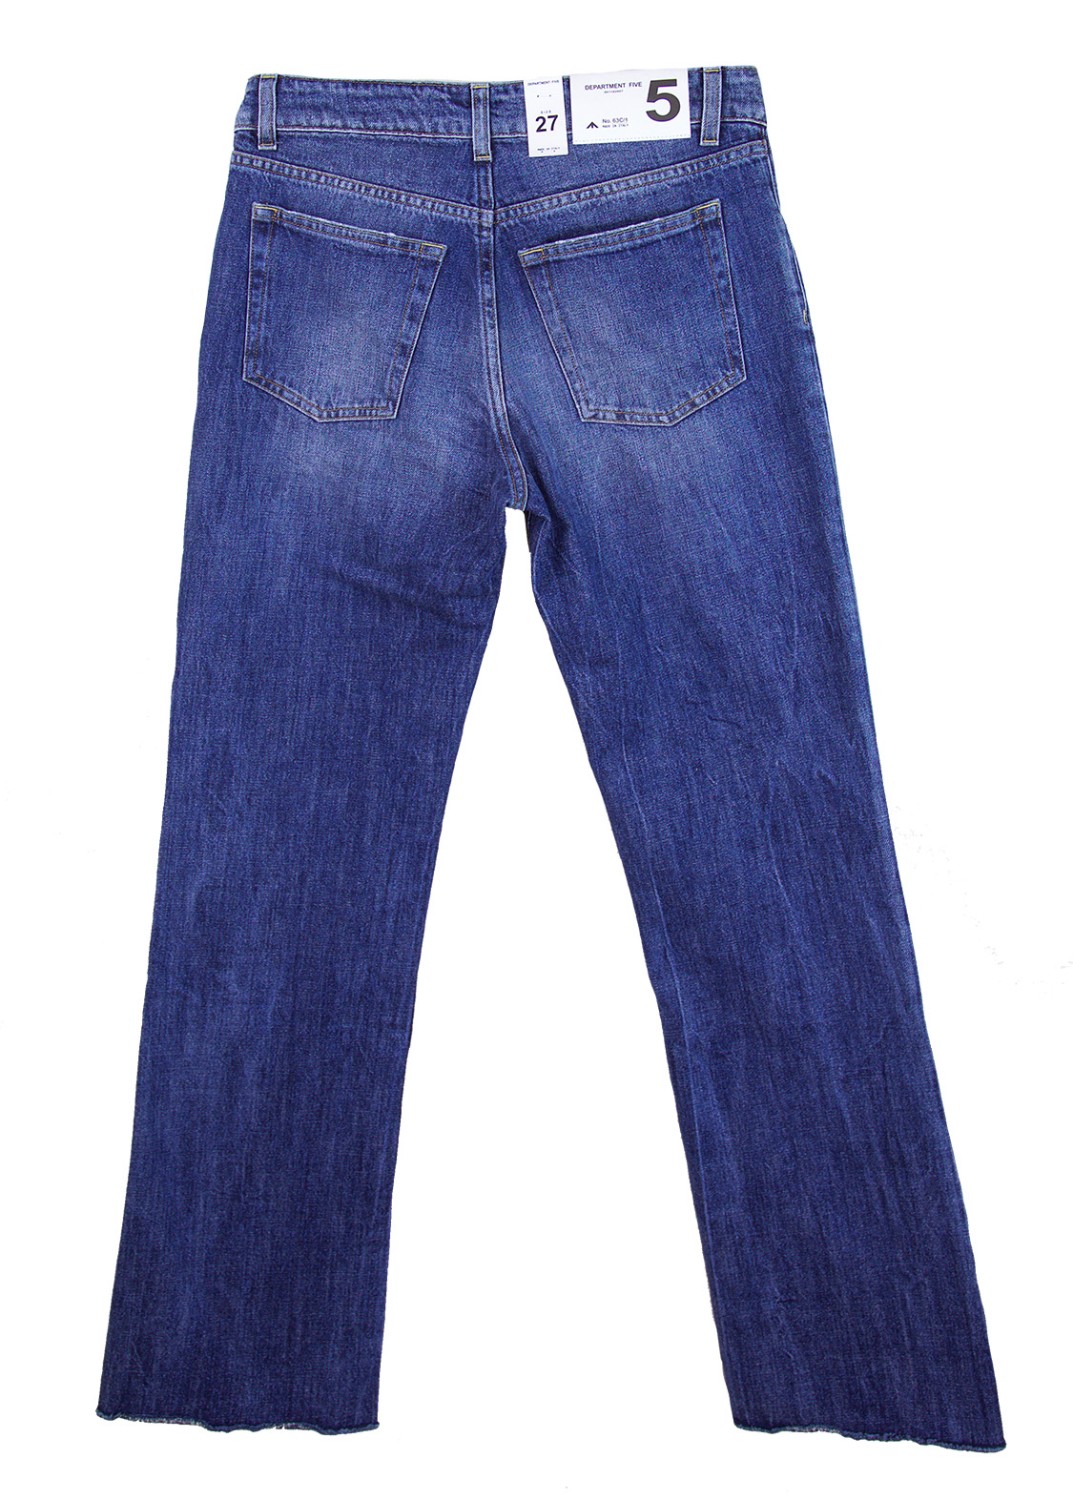 shop Department 5 Saldi Pantaloni: Pantalone jeans Department 5, modello stretto con zampa d'elefante, quattro tasche, vita regolare.

Composizione: 100% cotone. number 961